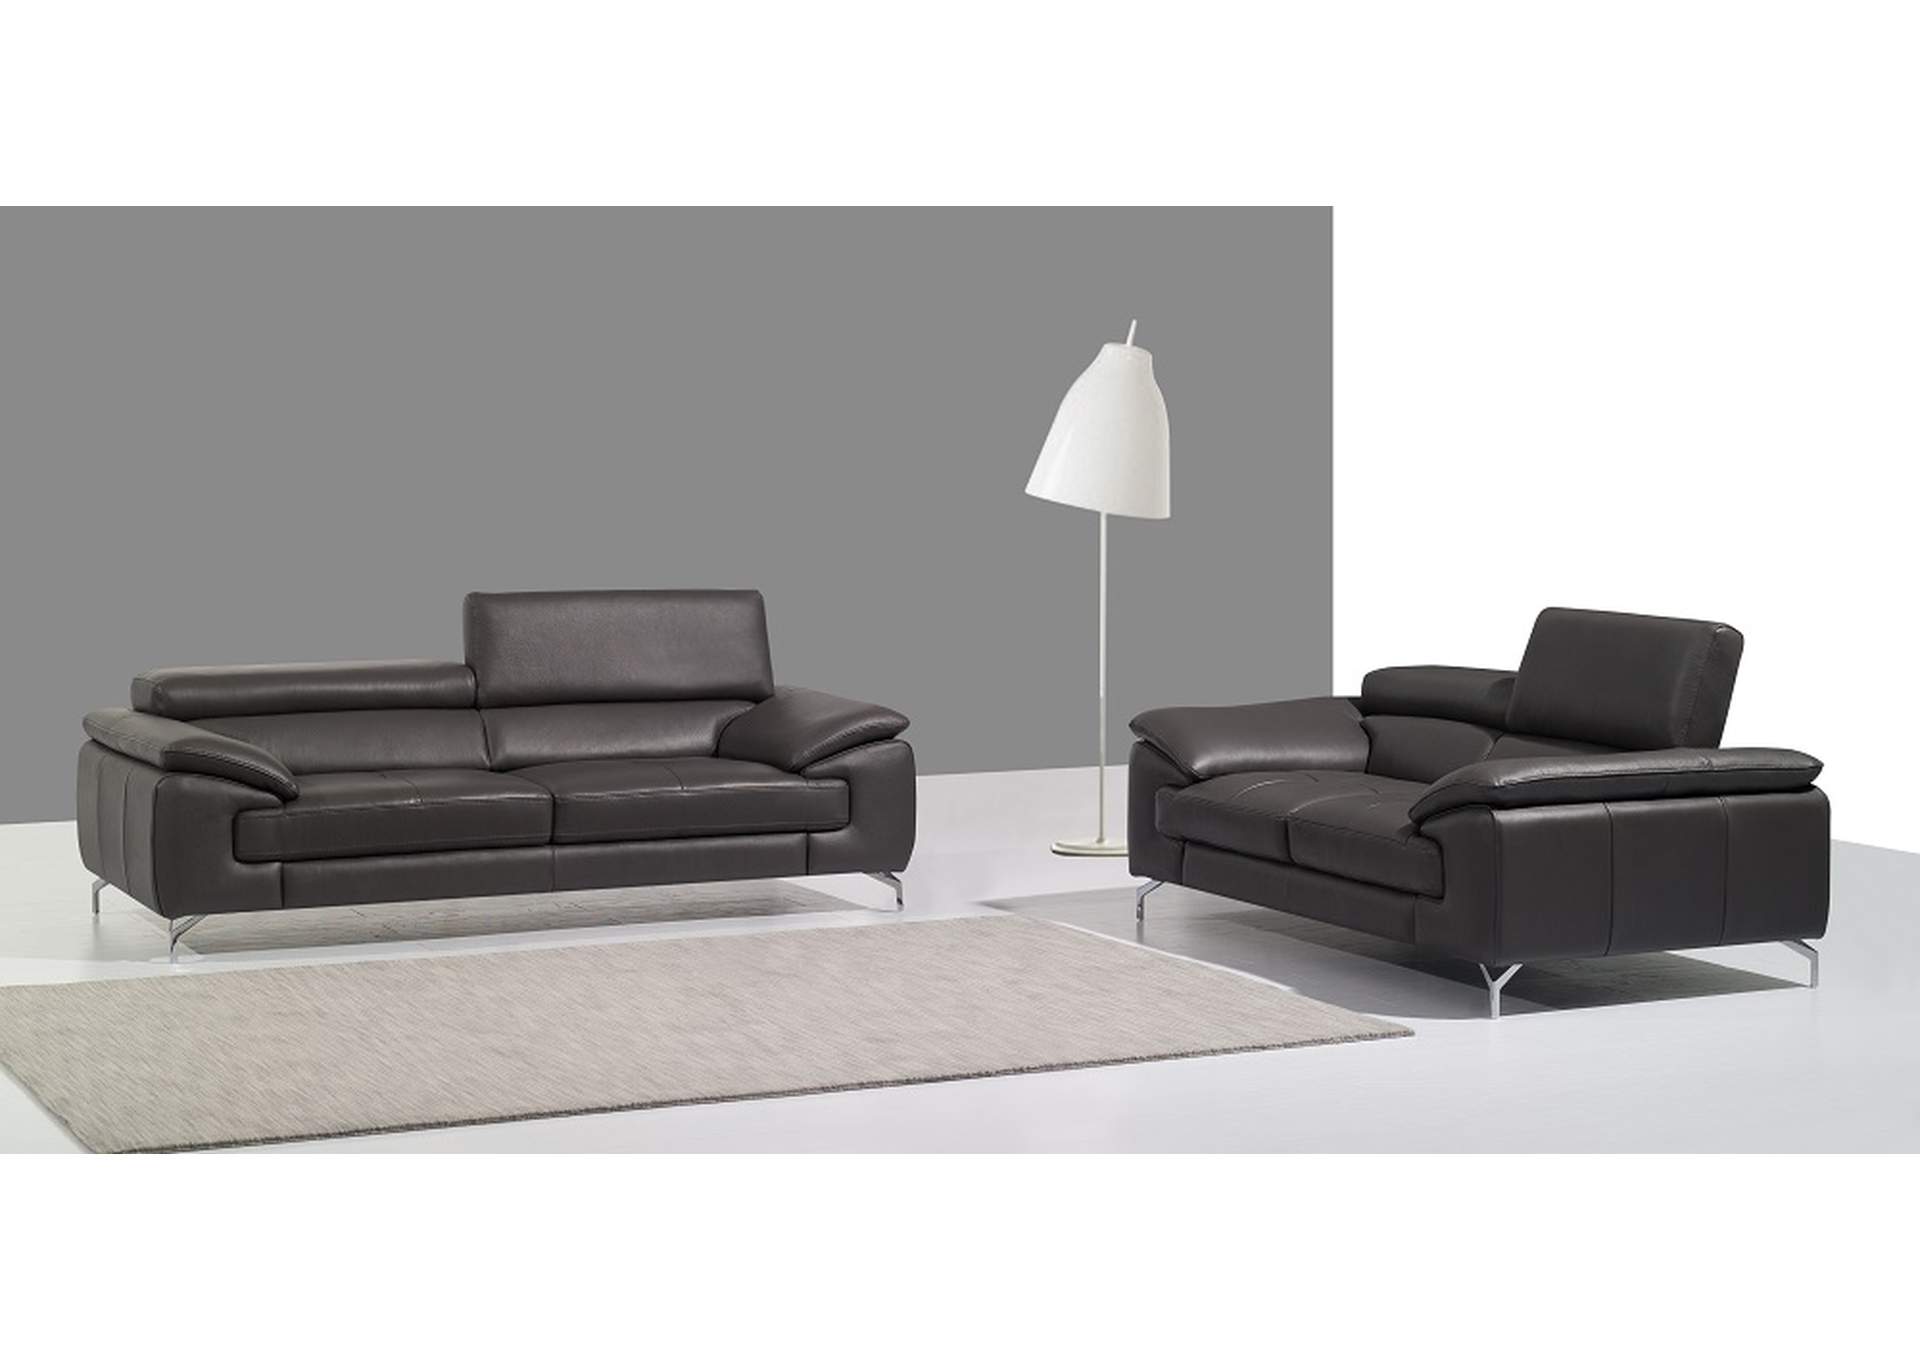 A973 Italian Leather Sofa in Grey,J&M Furniture